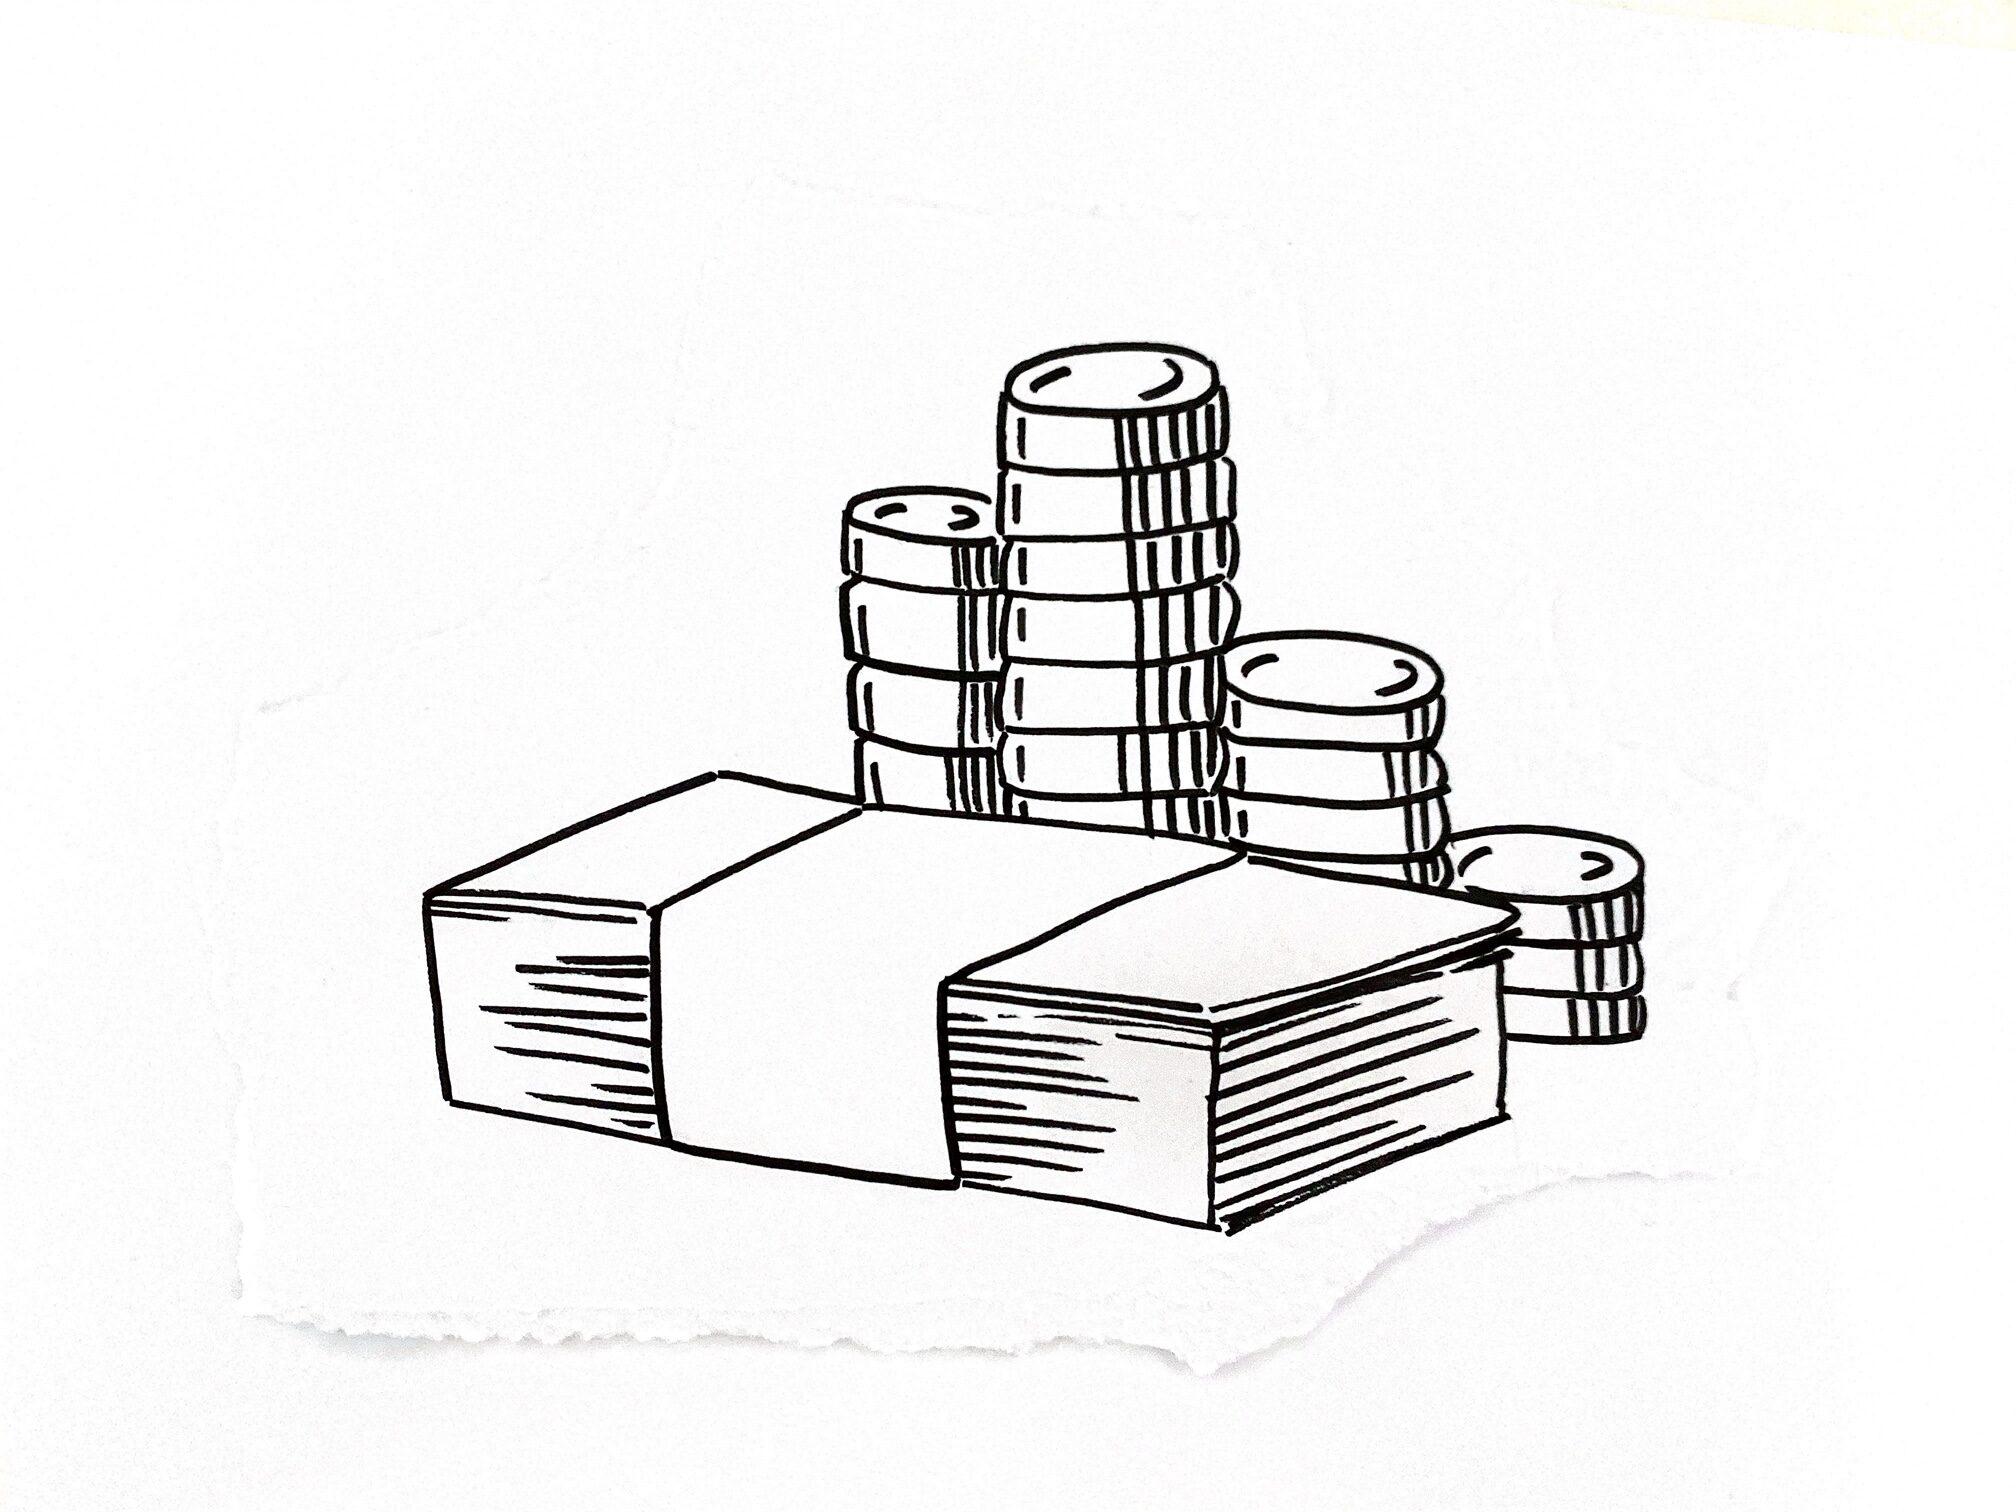 Skizzierte Banknoten und Münzen als Symbol für den Erfahrungsbericht "Prozessoptimierung im Finanzinstitut"